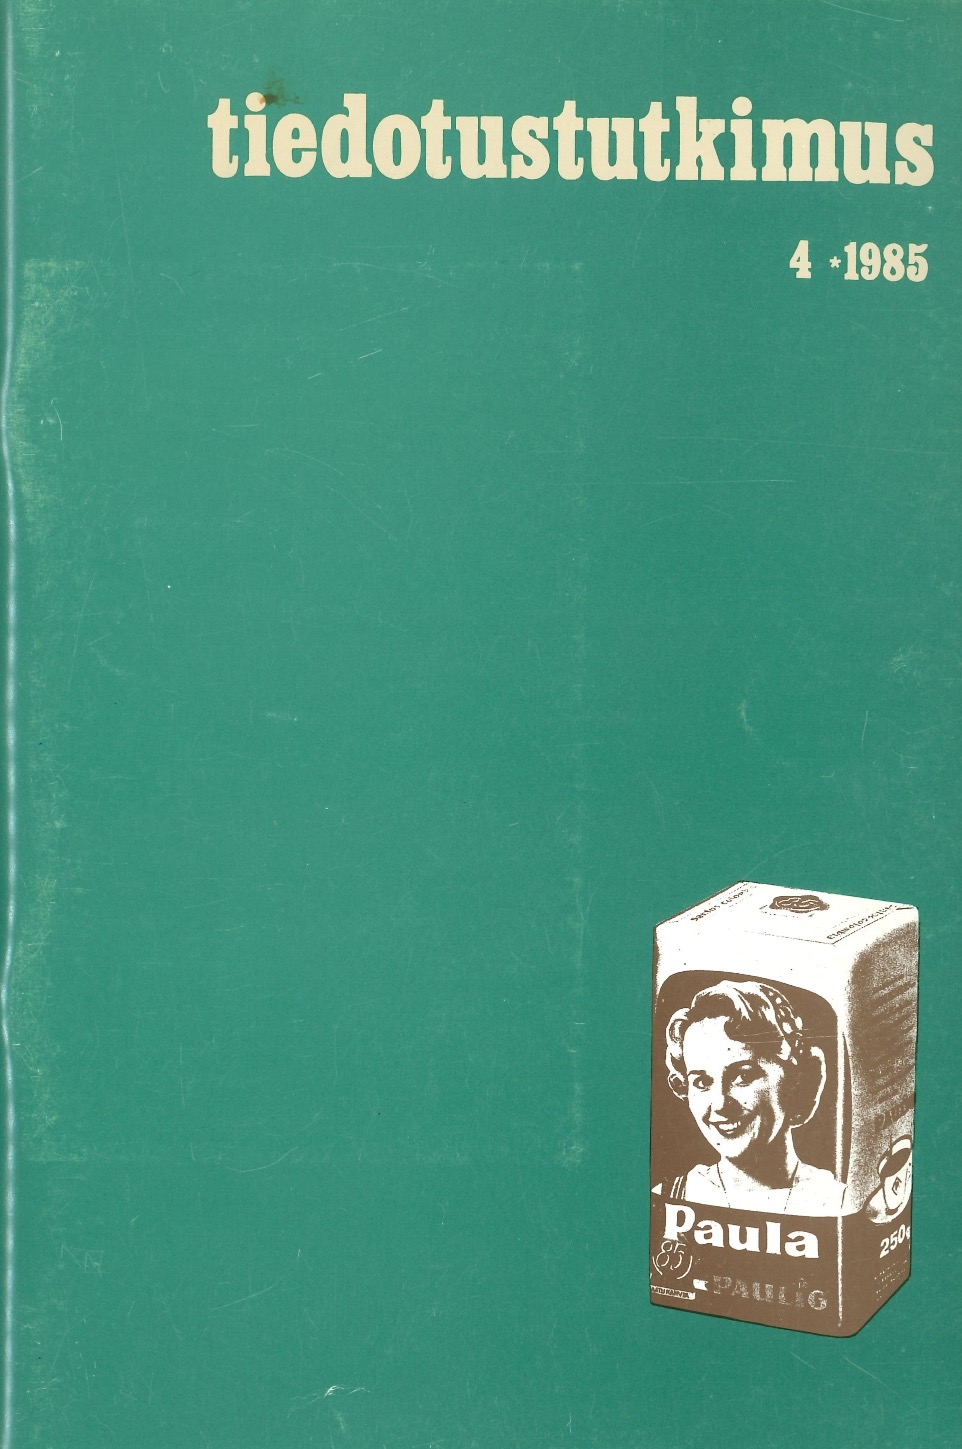 					Näytä Vol 8 Nro 4 (1985)
				